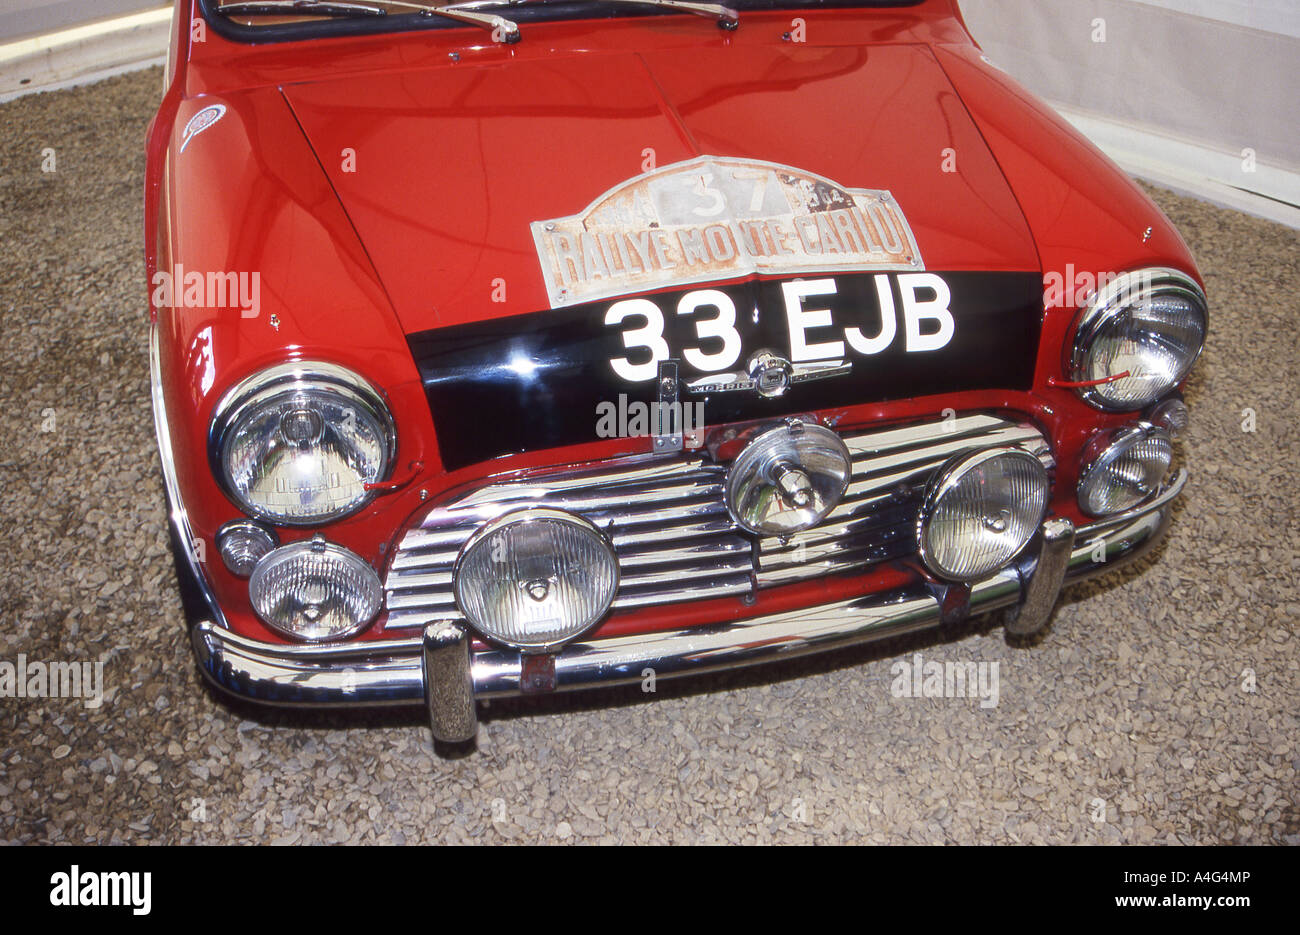 33EJB, il famoso Morris Mini Cooper vincitore del 1964 Rally di Monte Carlo. Foto Stock